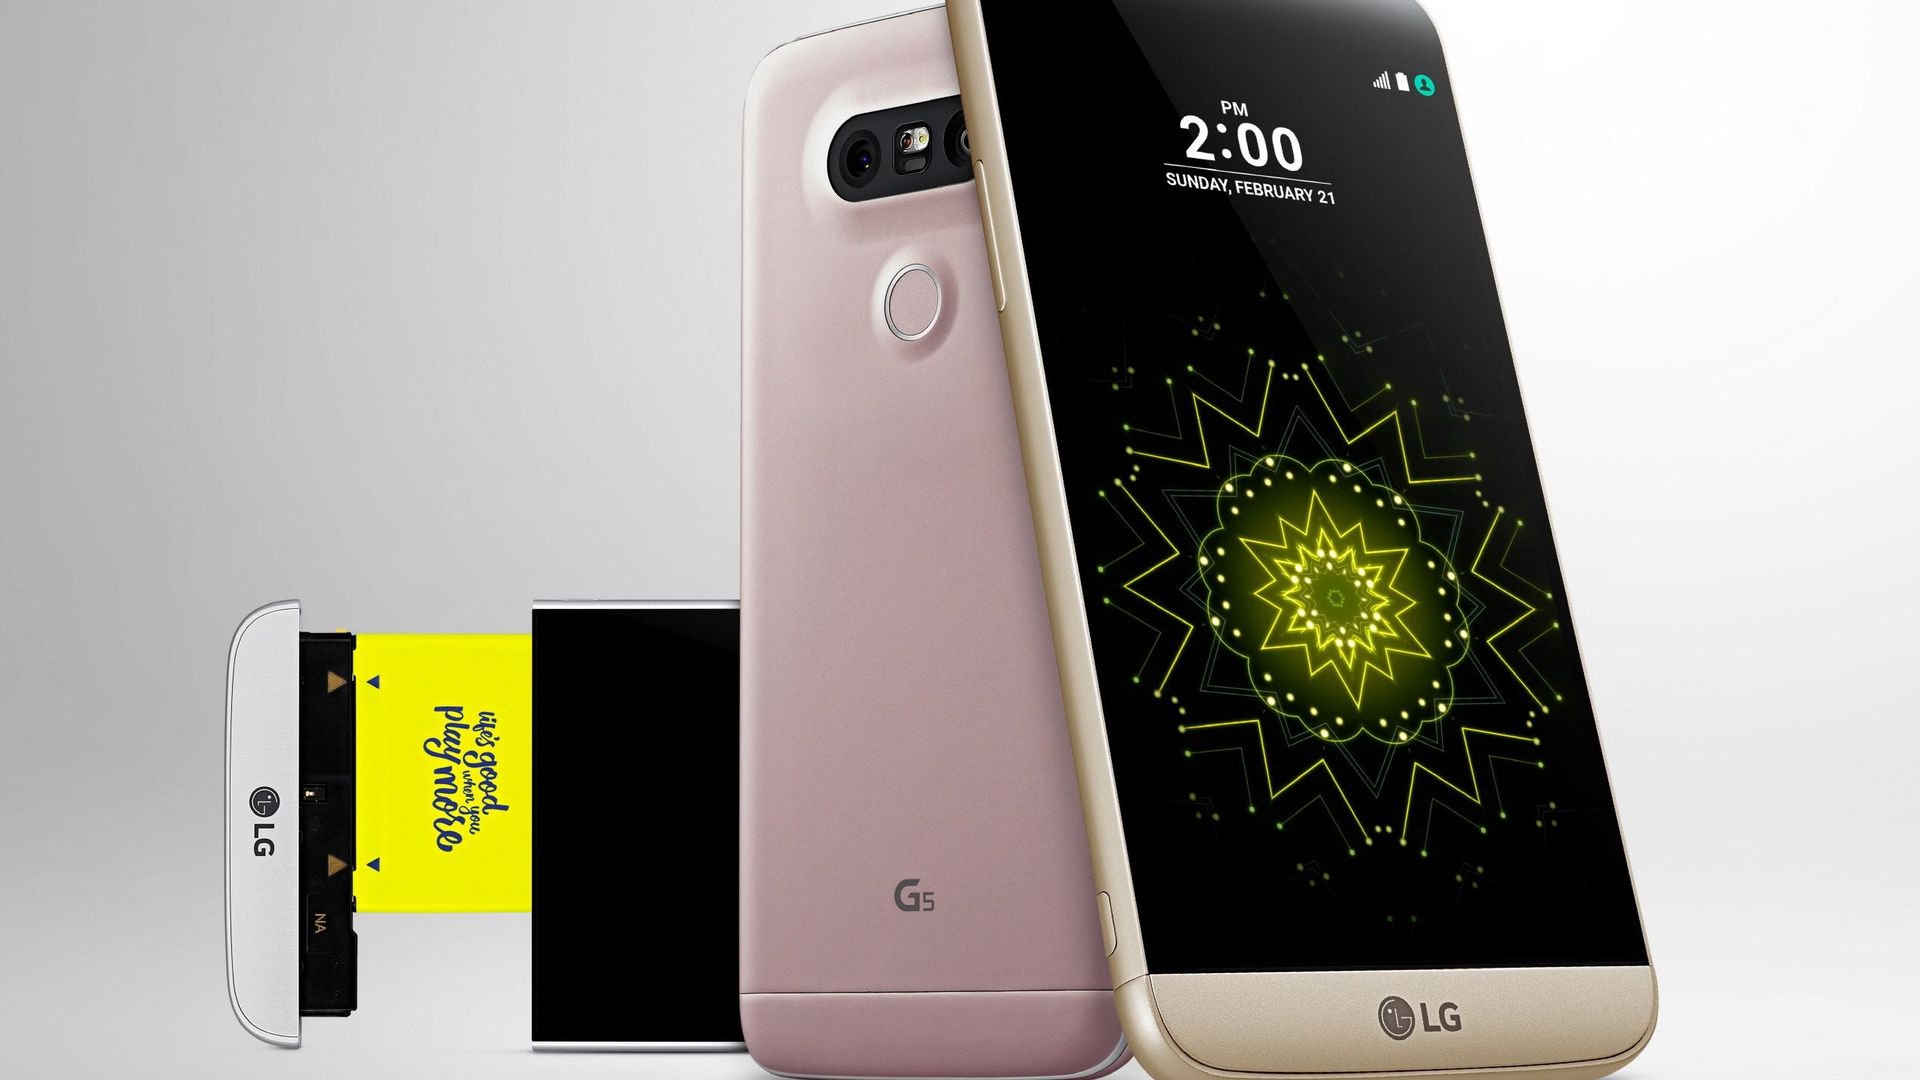 LG s'active pour sortir son nouveau smartphone avant Samsung